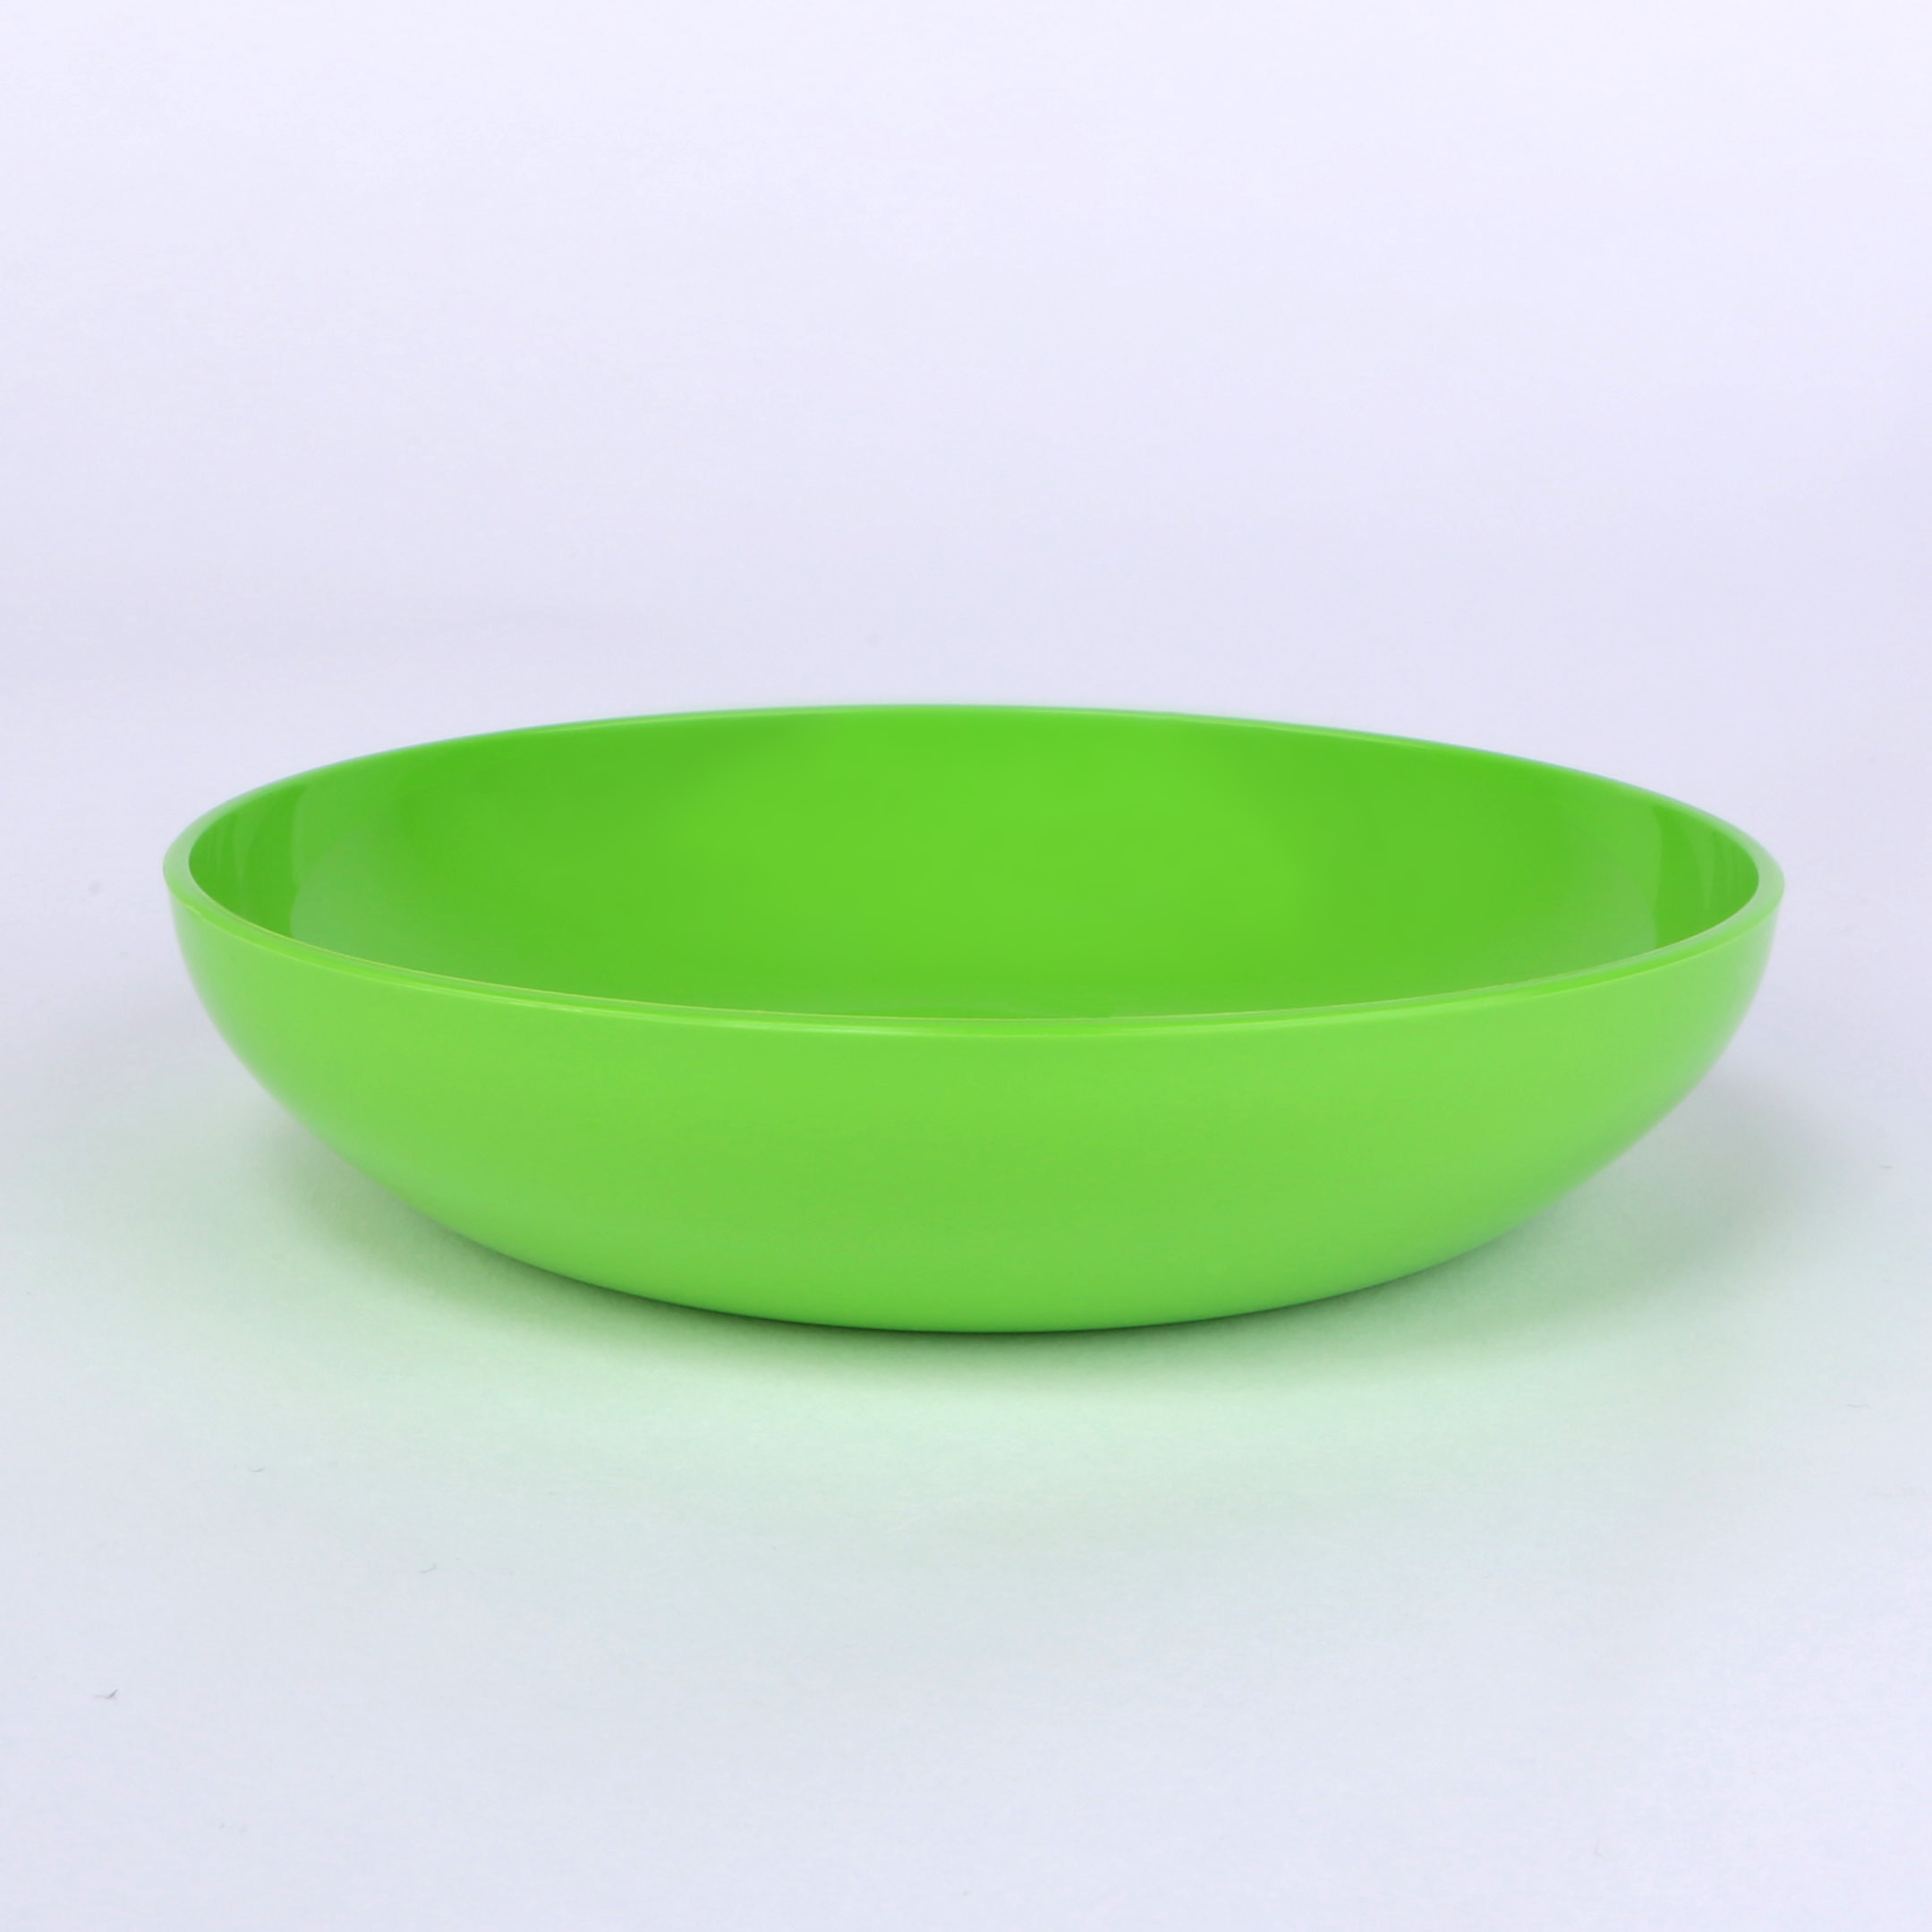 vaLon Zephyr Flache Dessertschale 13,5 cm aus schadstofffreiem Kunststoff in der Farbe grasgrün.